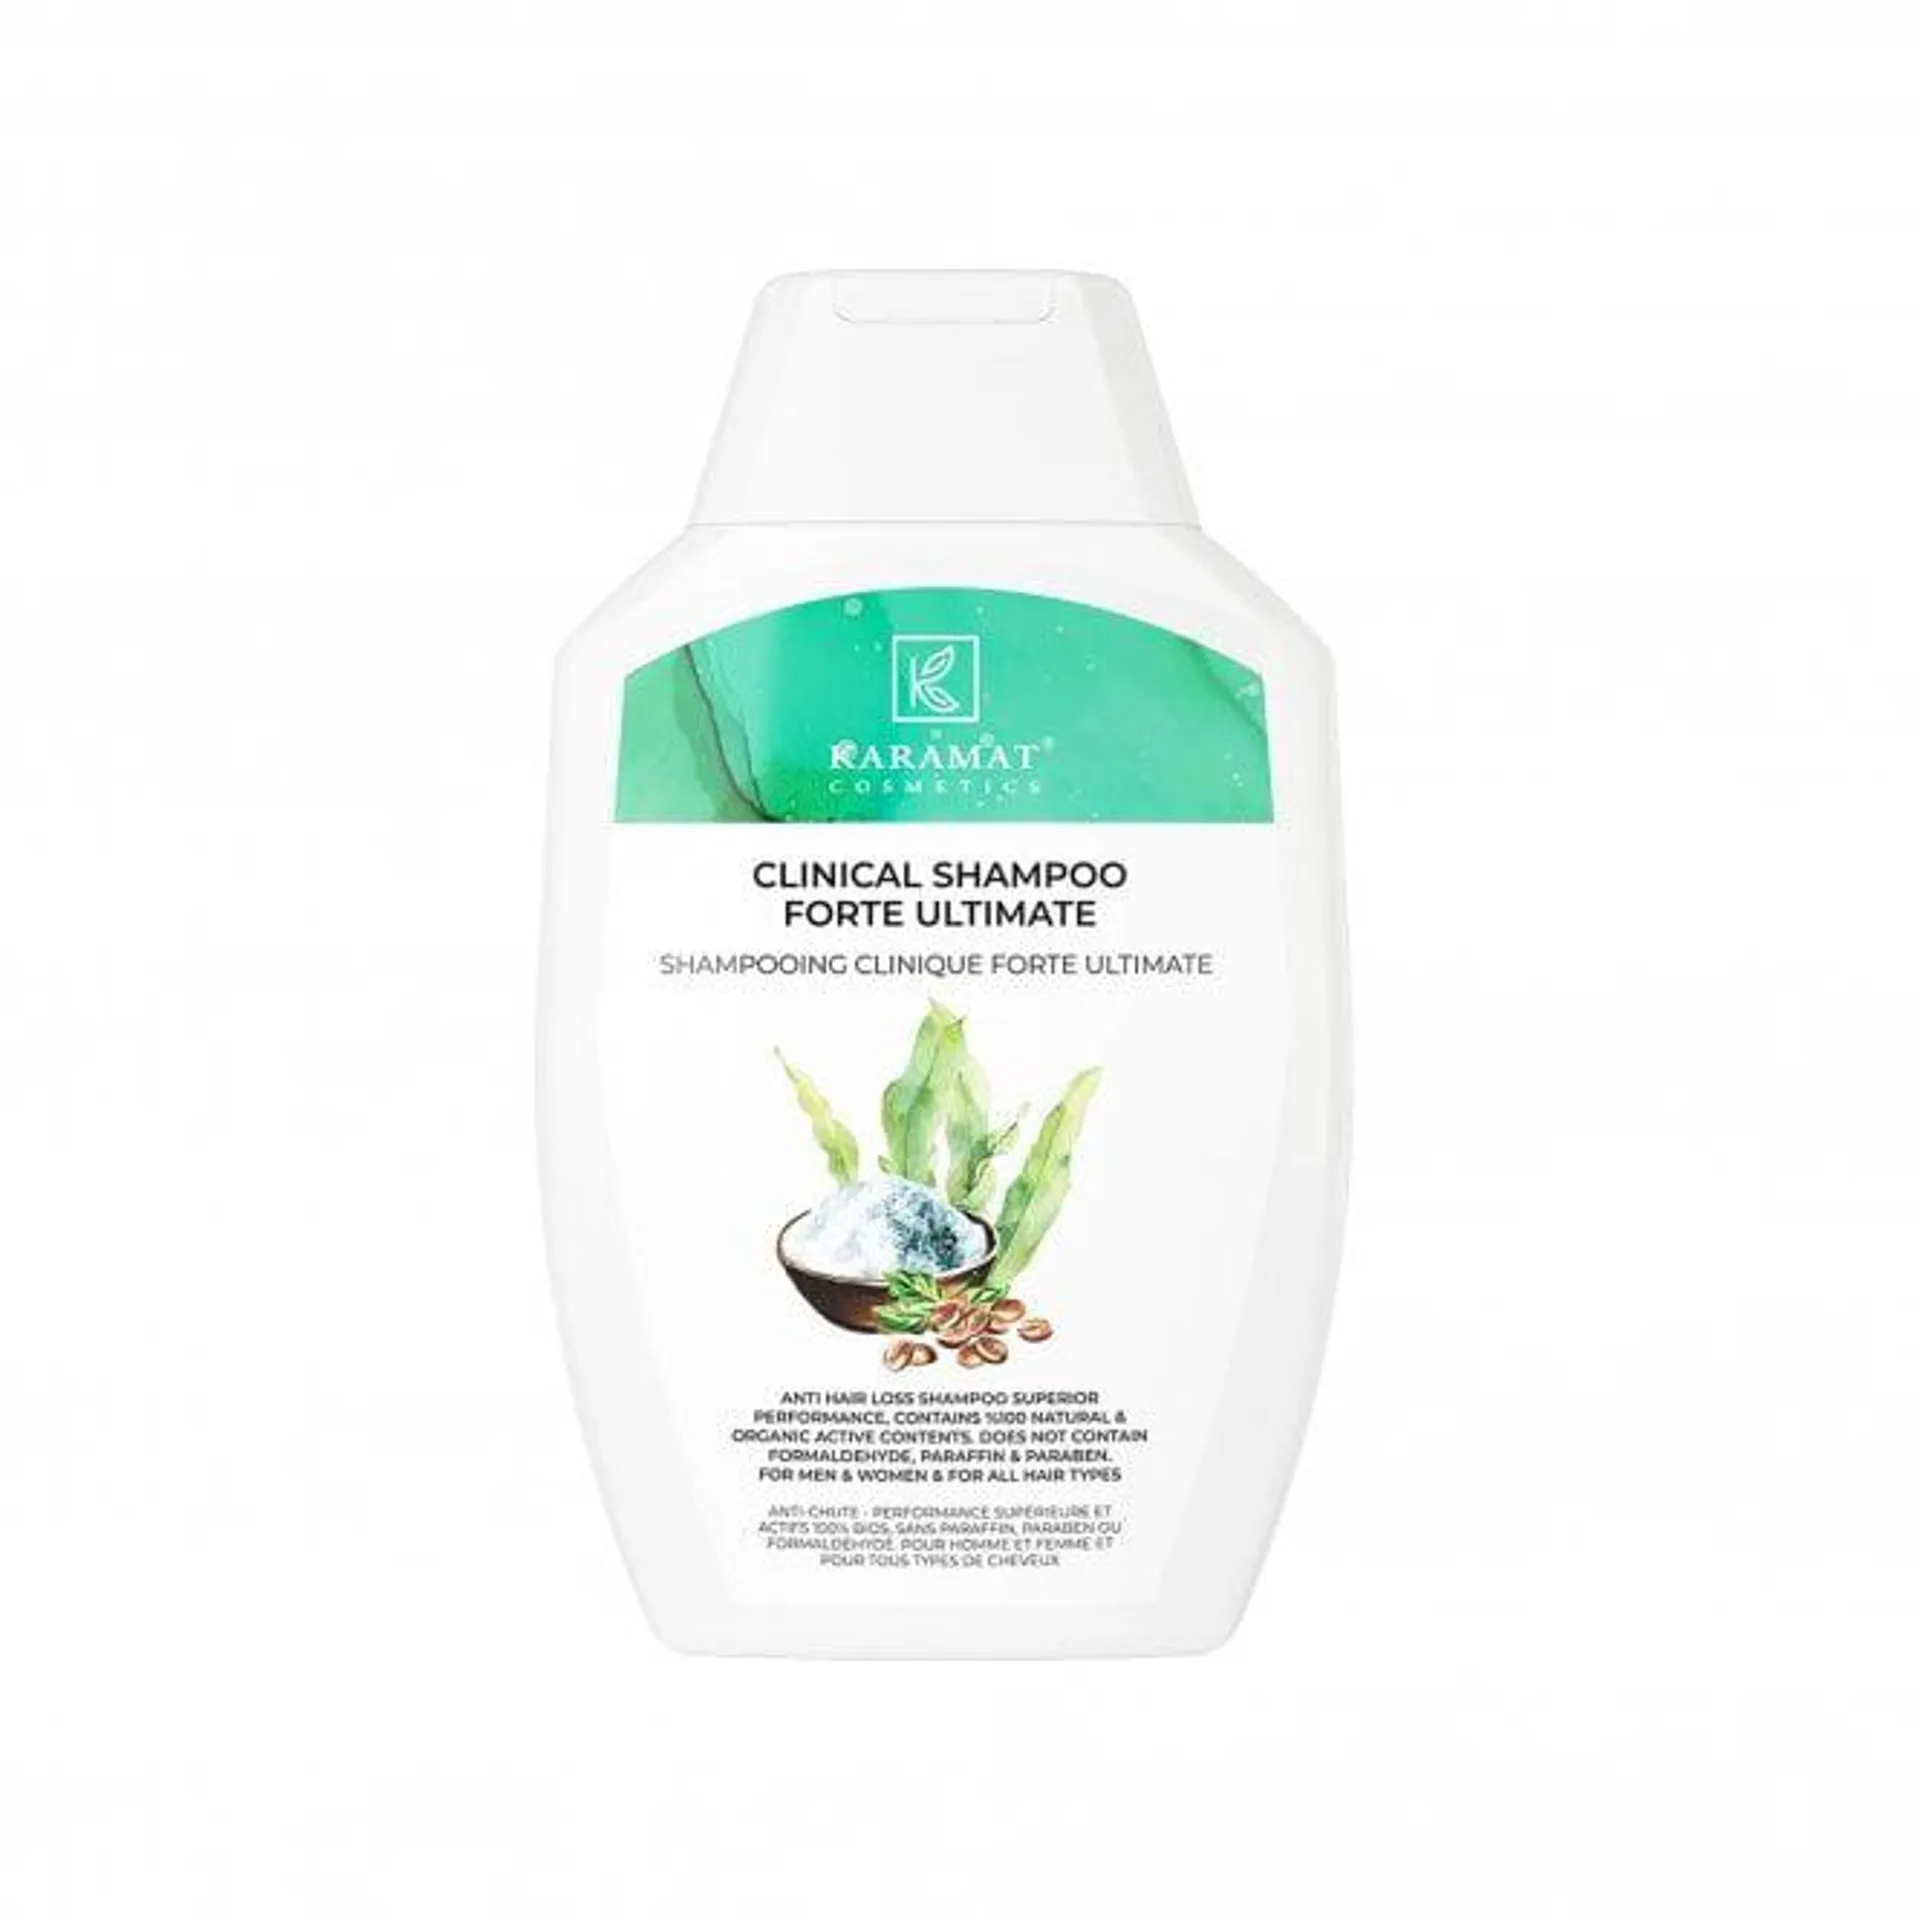 Karamat Forte Ultimate Shampoo 300ml Bottle